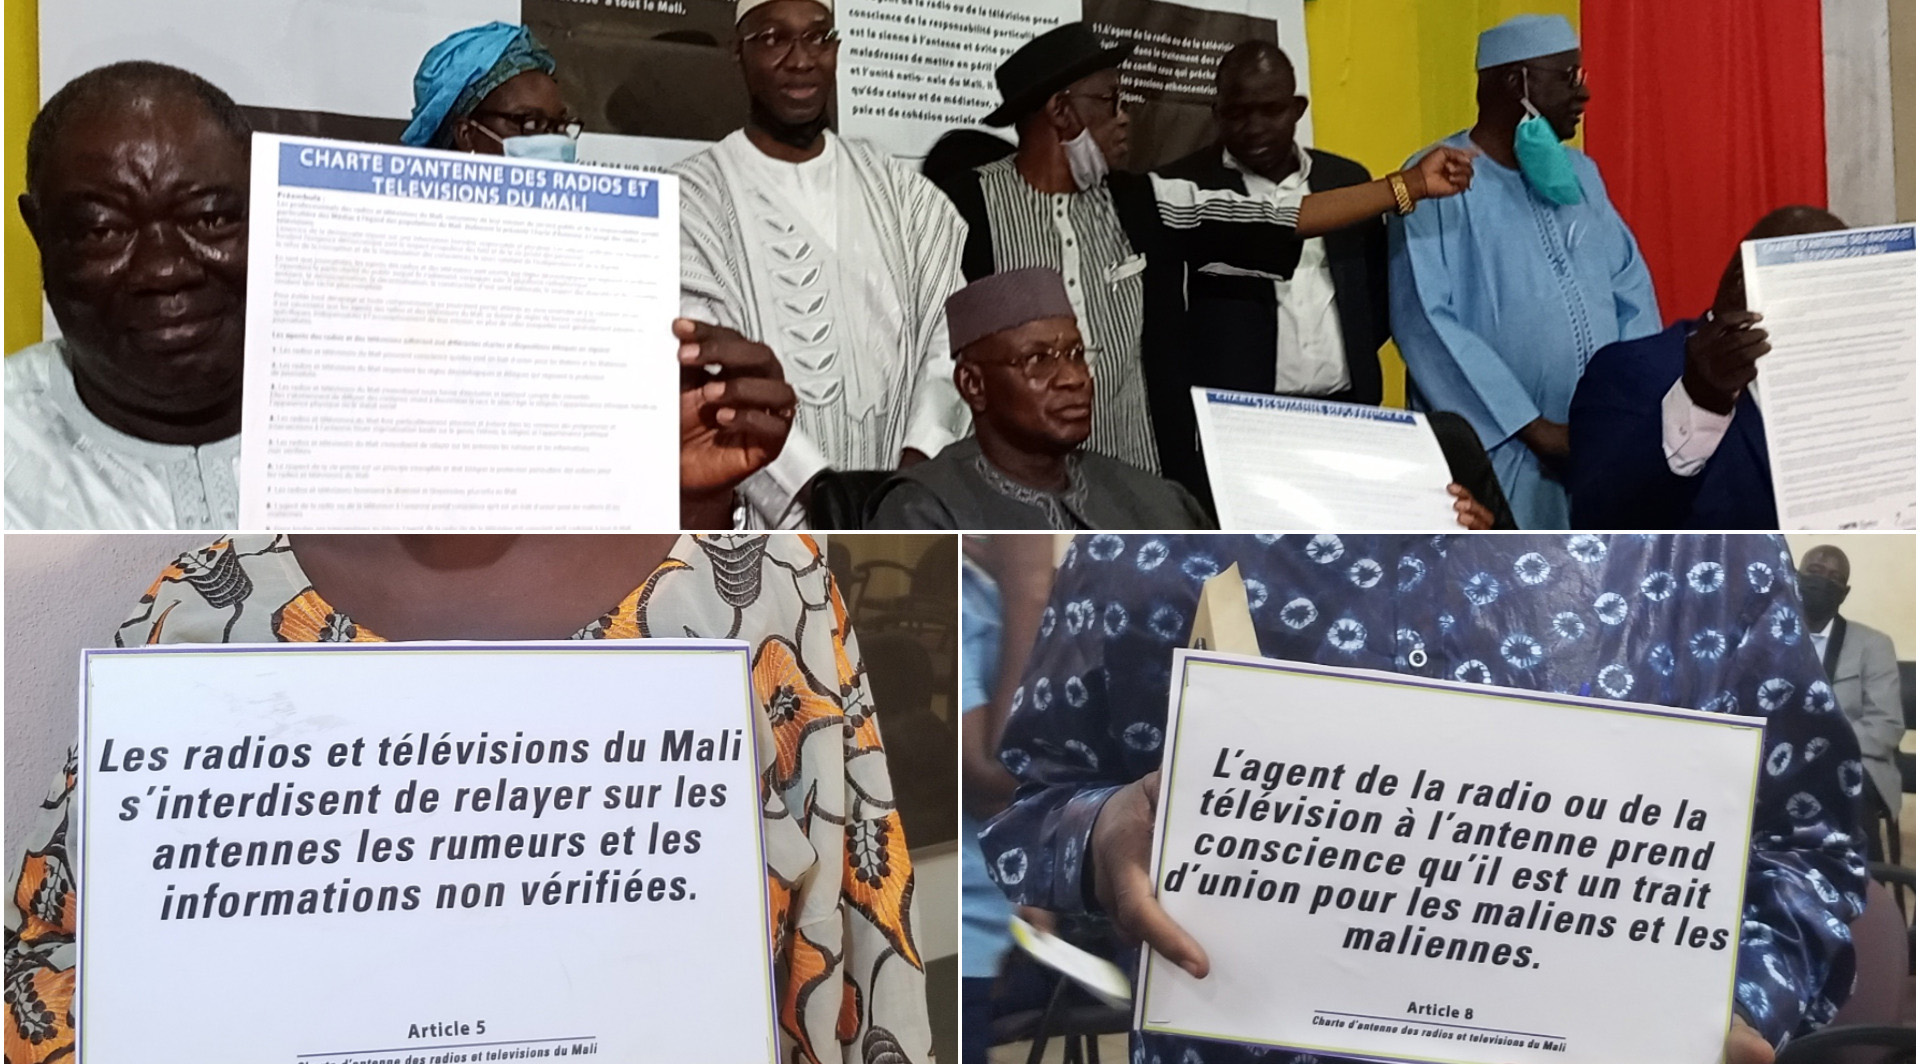 Mali - charte des radios pour la cohésion sociale et la paix